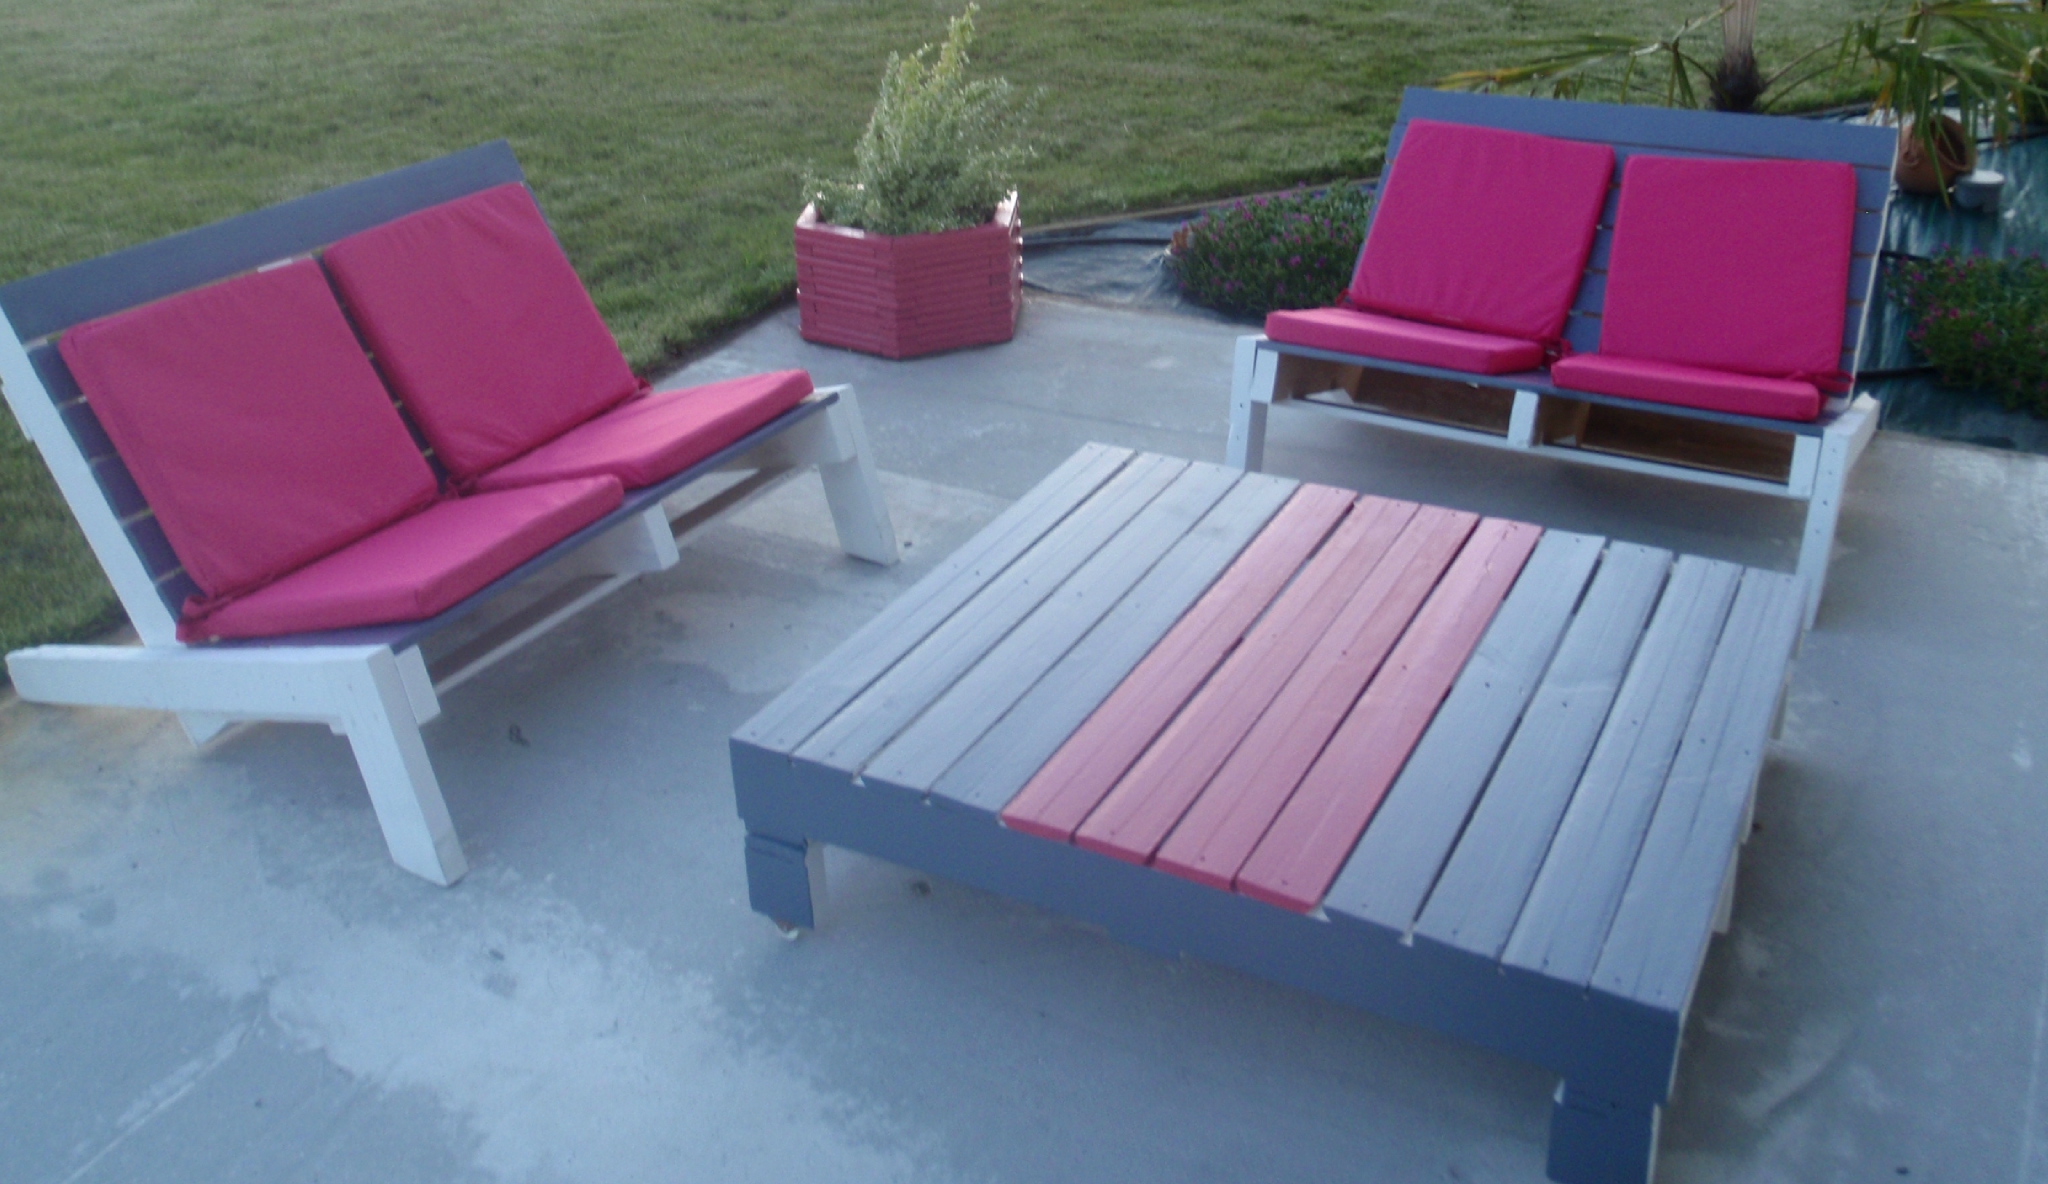 Set de meubles avec des palettes pour la terrasse